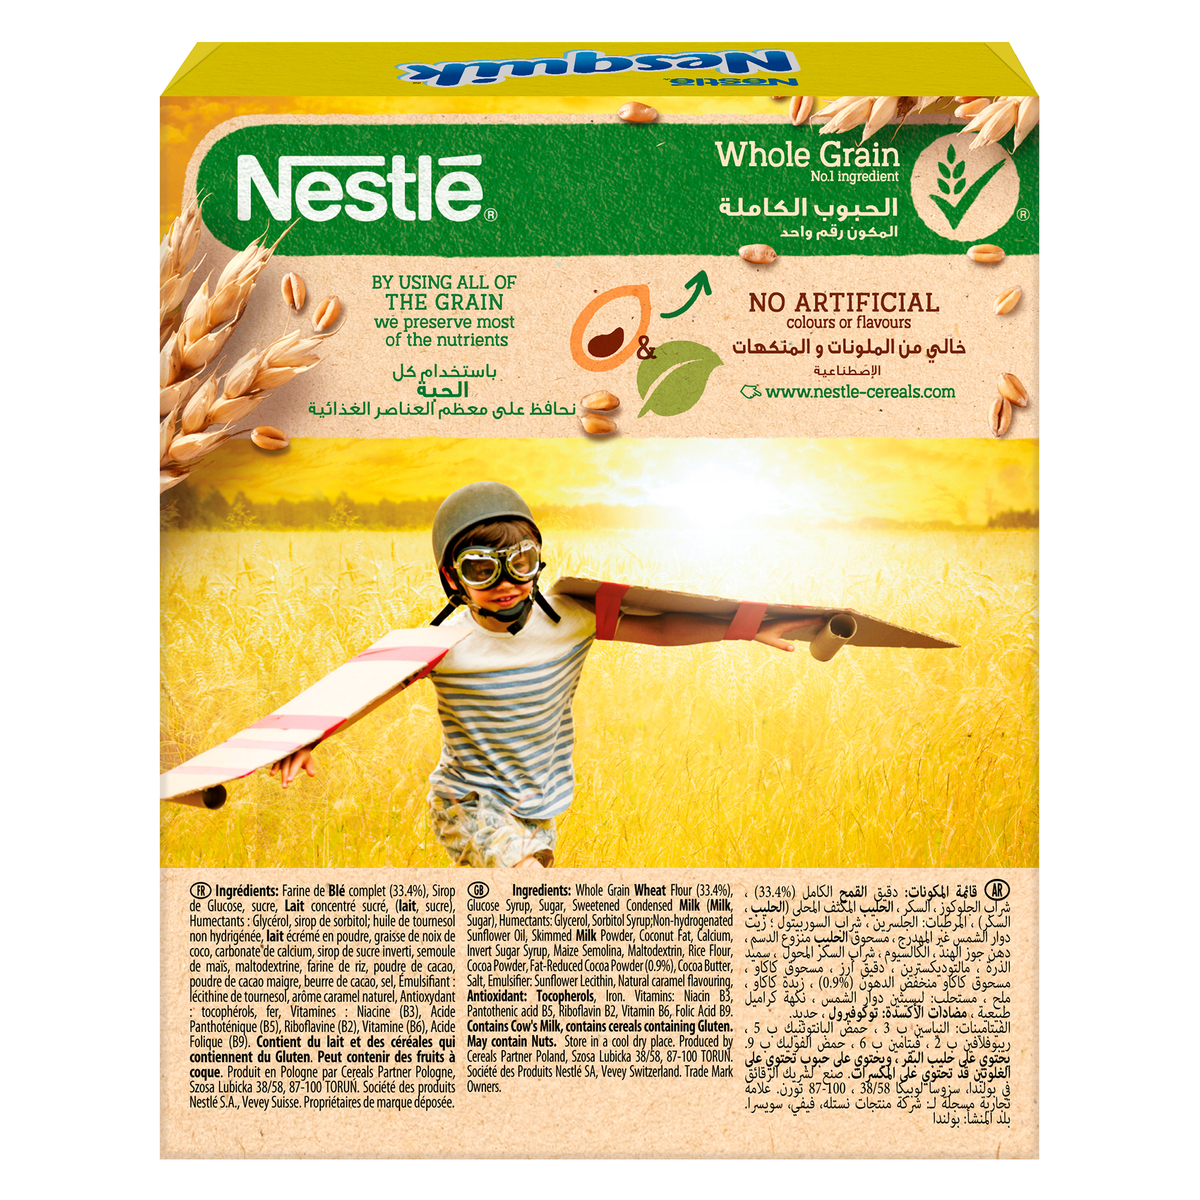 Nestle Nesquik Chocolate Breakfast Cereal Bar 25 g 10+2